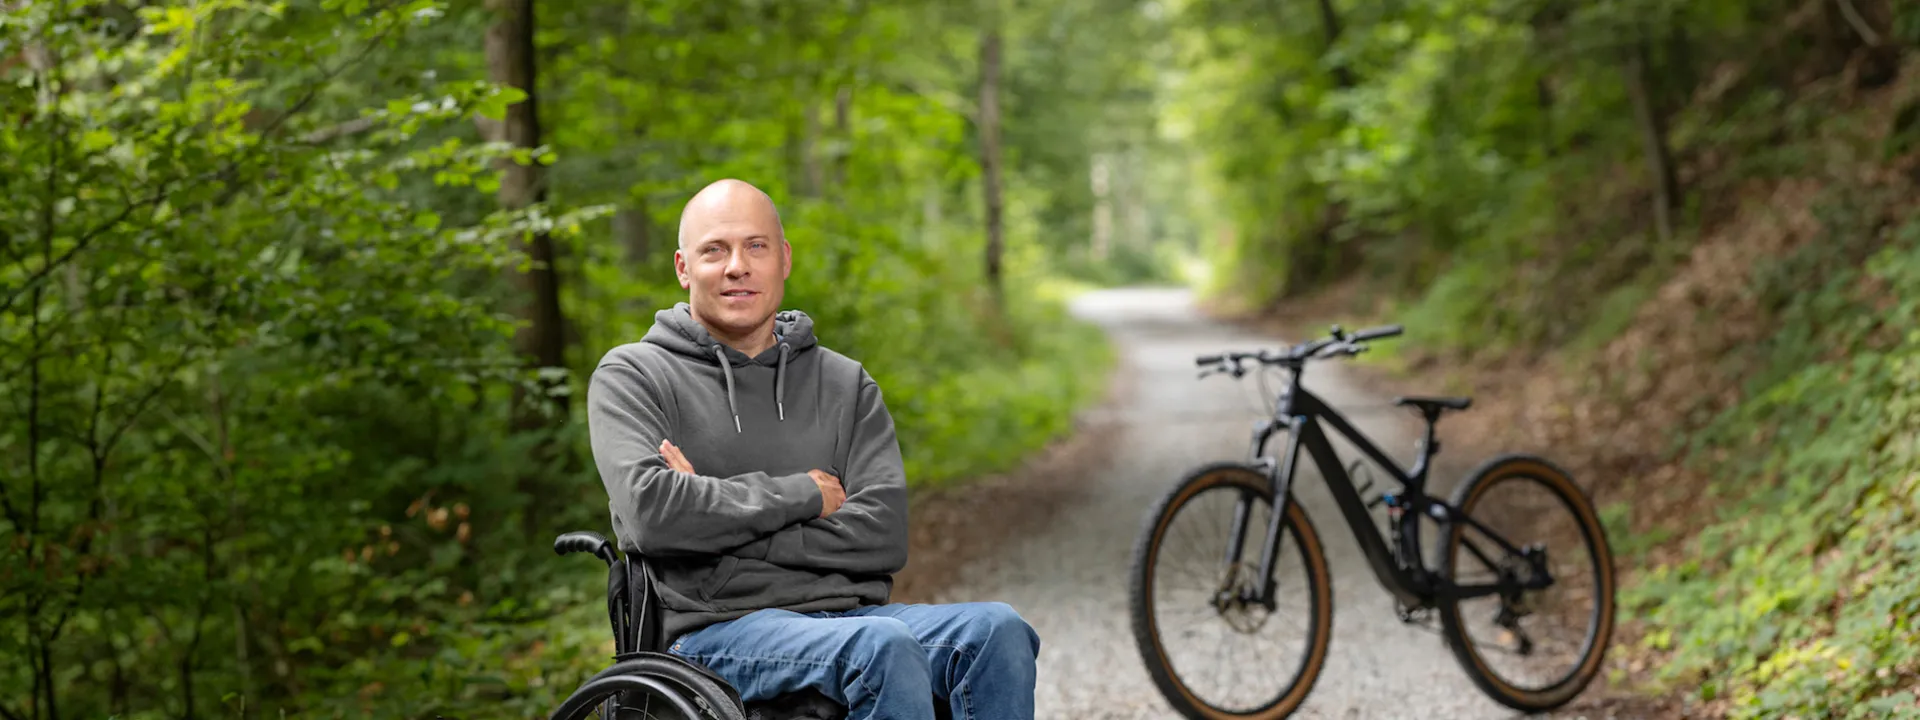 Sebastian Tobler est assise dans son fauteuil roulant dans la foret.